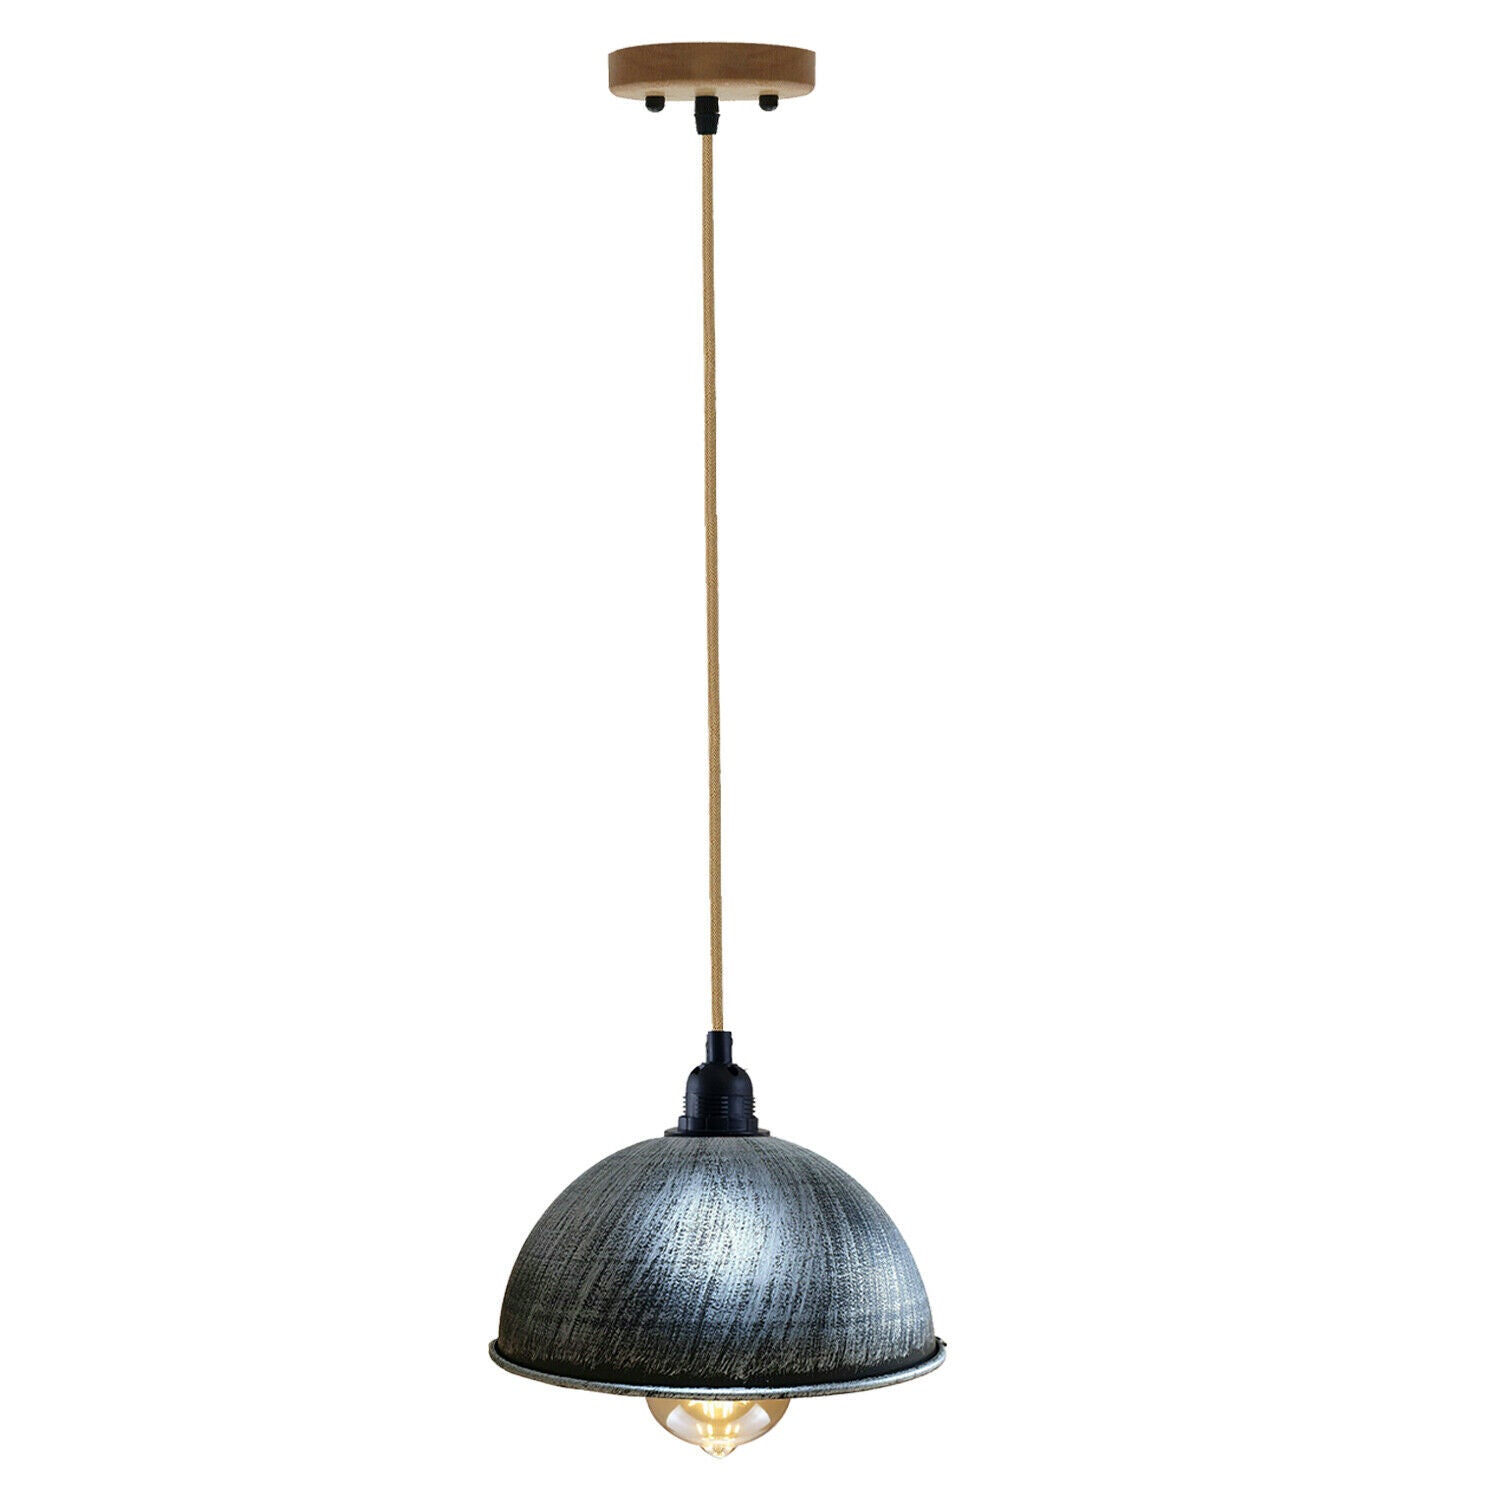 Retro-Stil Vintage Industrial Hanf Anhänger Lampenschirm aus Metall gebürstet Silber